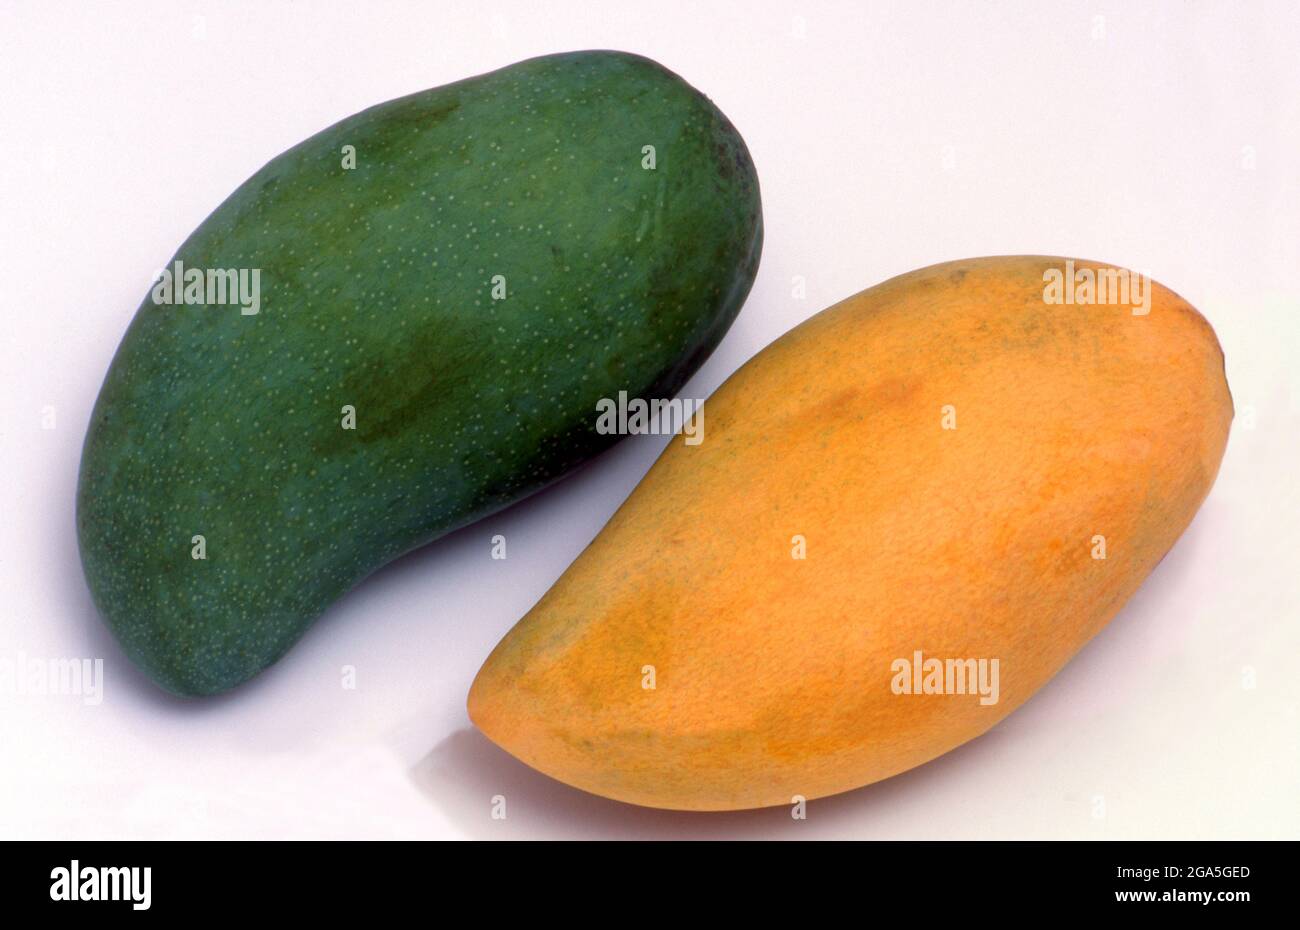 Un mango è un frutto di pietra commestibile prodotto dall'albero tropicale Mangifera indica che si ritiene abbia avuto origine dalla regione tra il Myanmar nord-occidentale, il Bangladesh e l'India nord-orientale. I manga sono stati coltivati nel sud e nel sud-est asiatico fin dai tempi antichi. Foto Stock